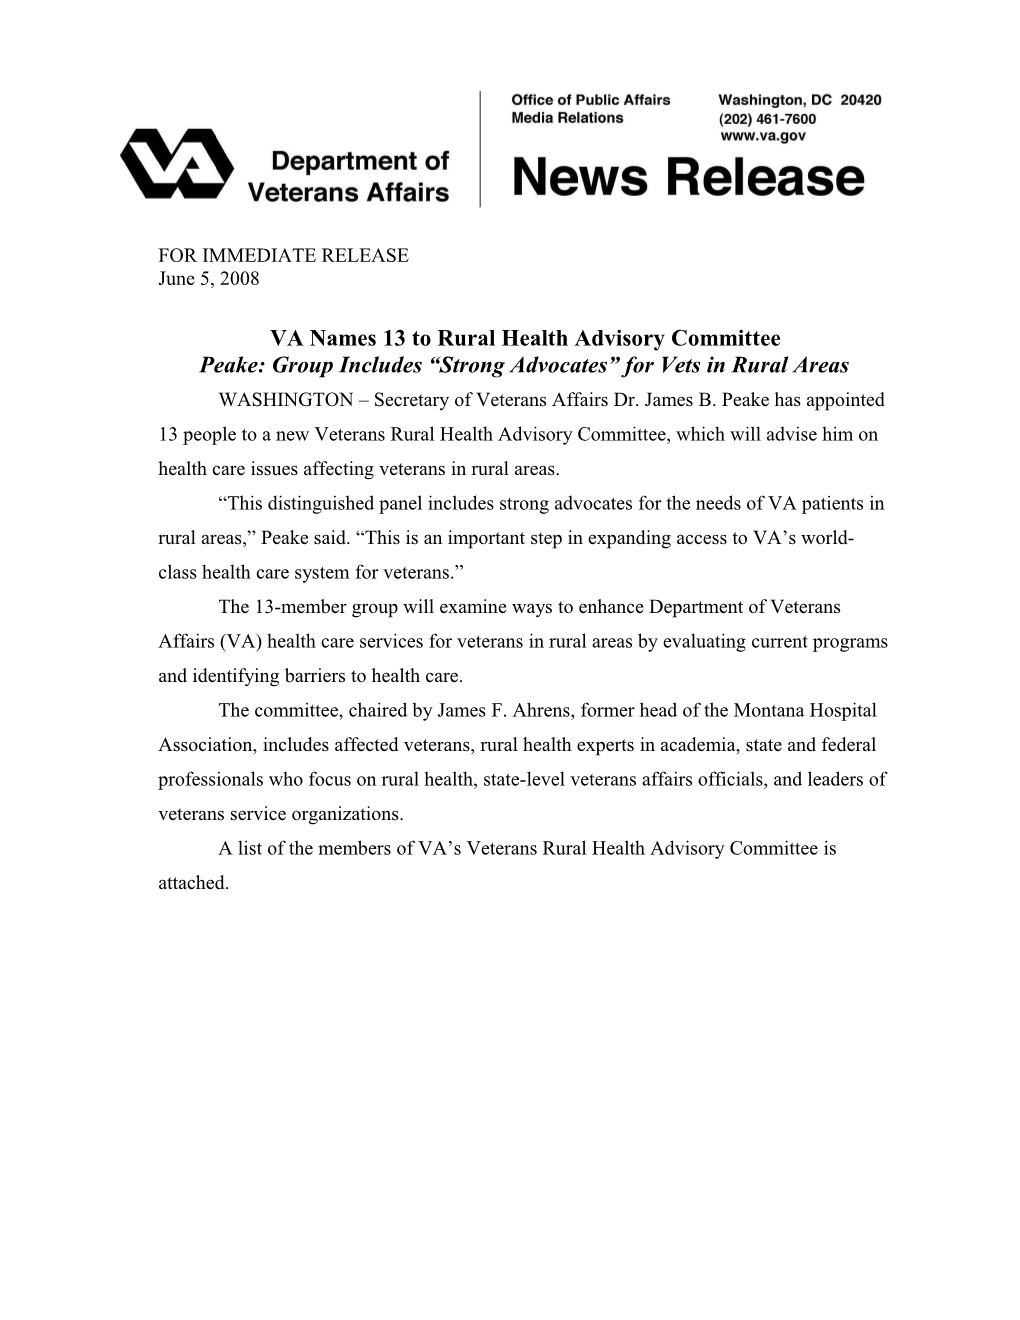 VA Names 13 to Rural Health Advisory Committee